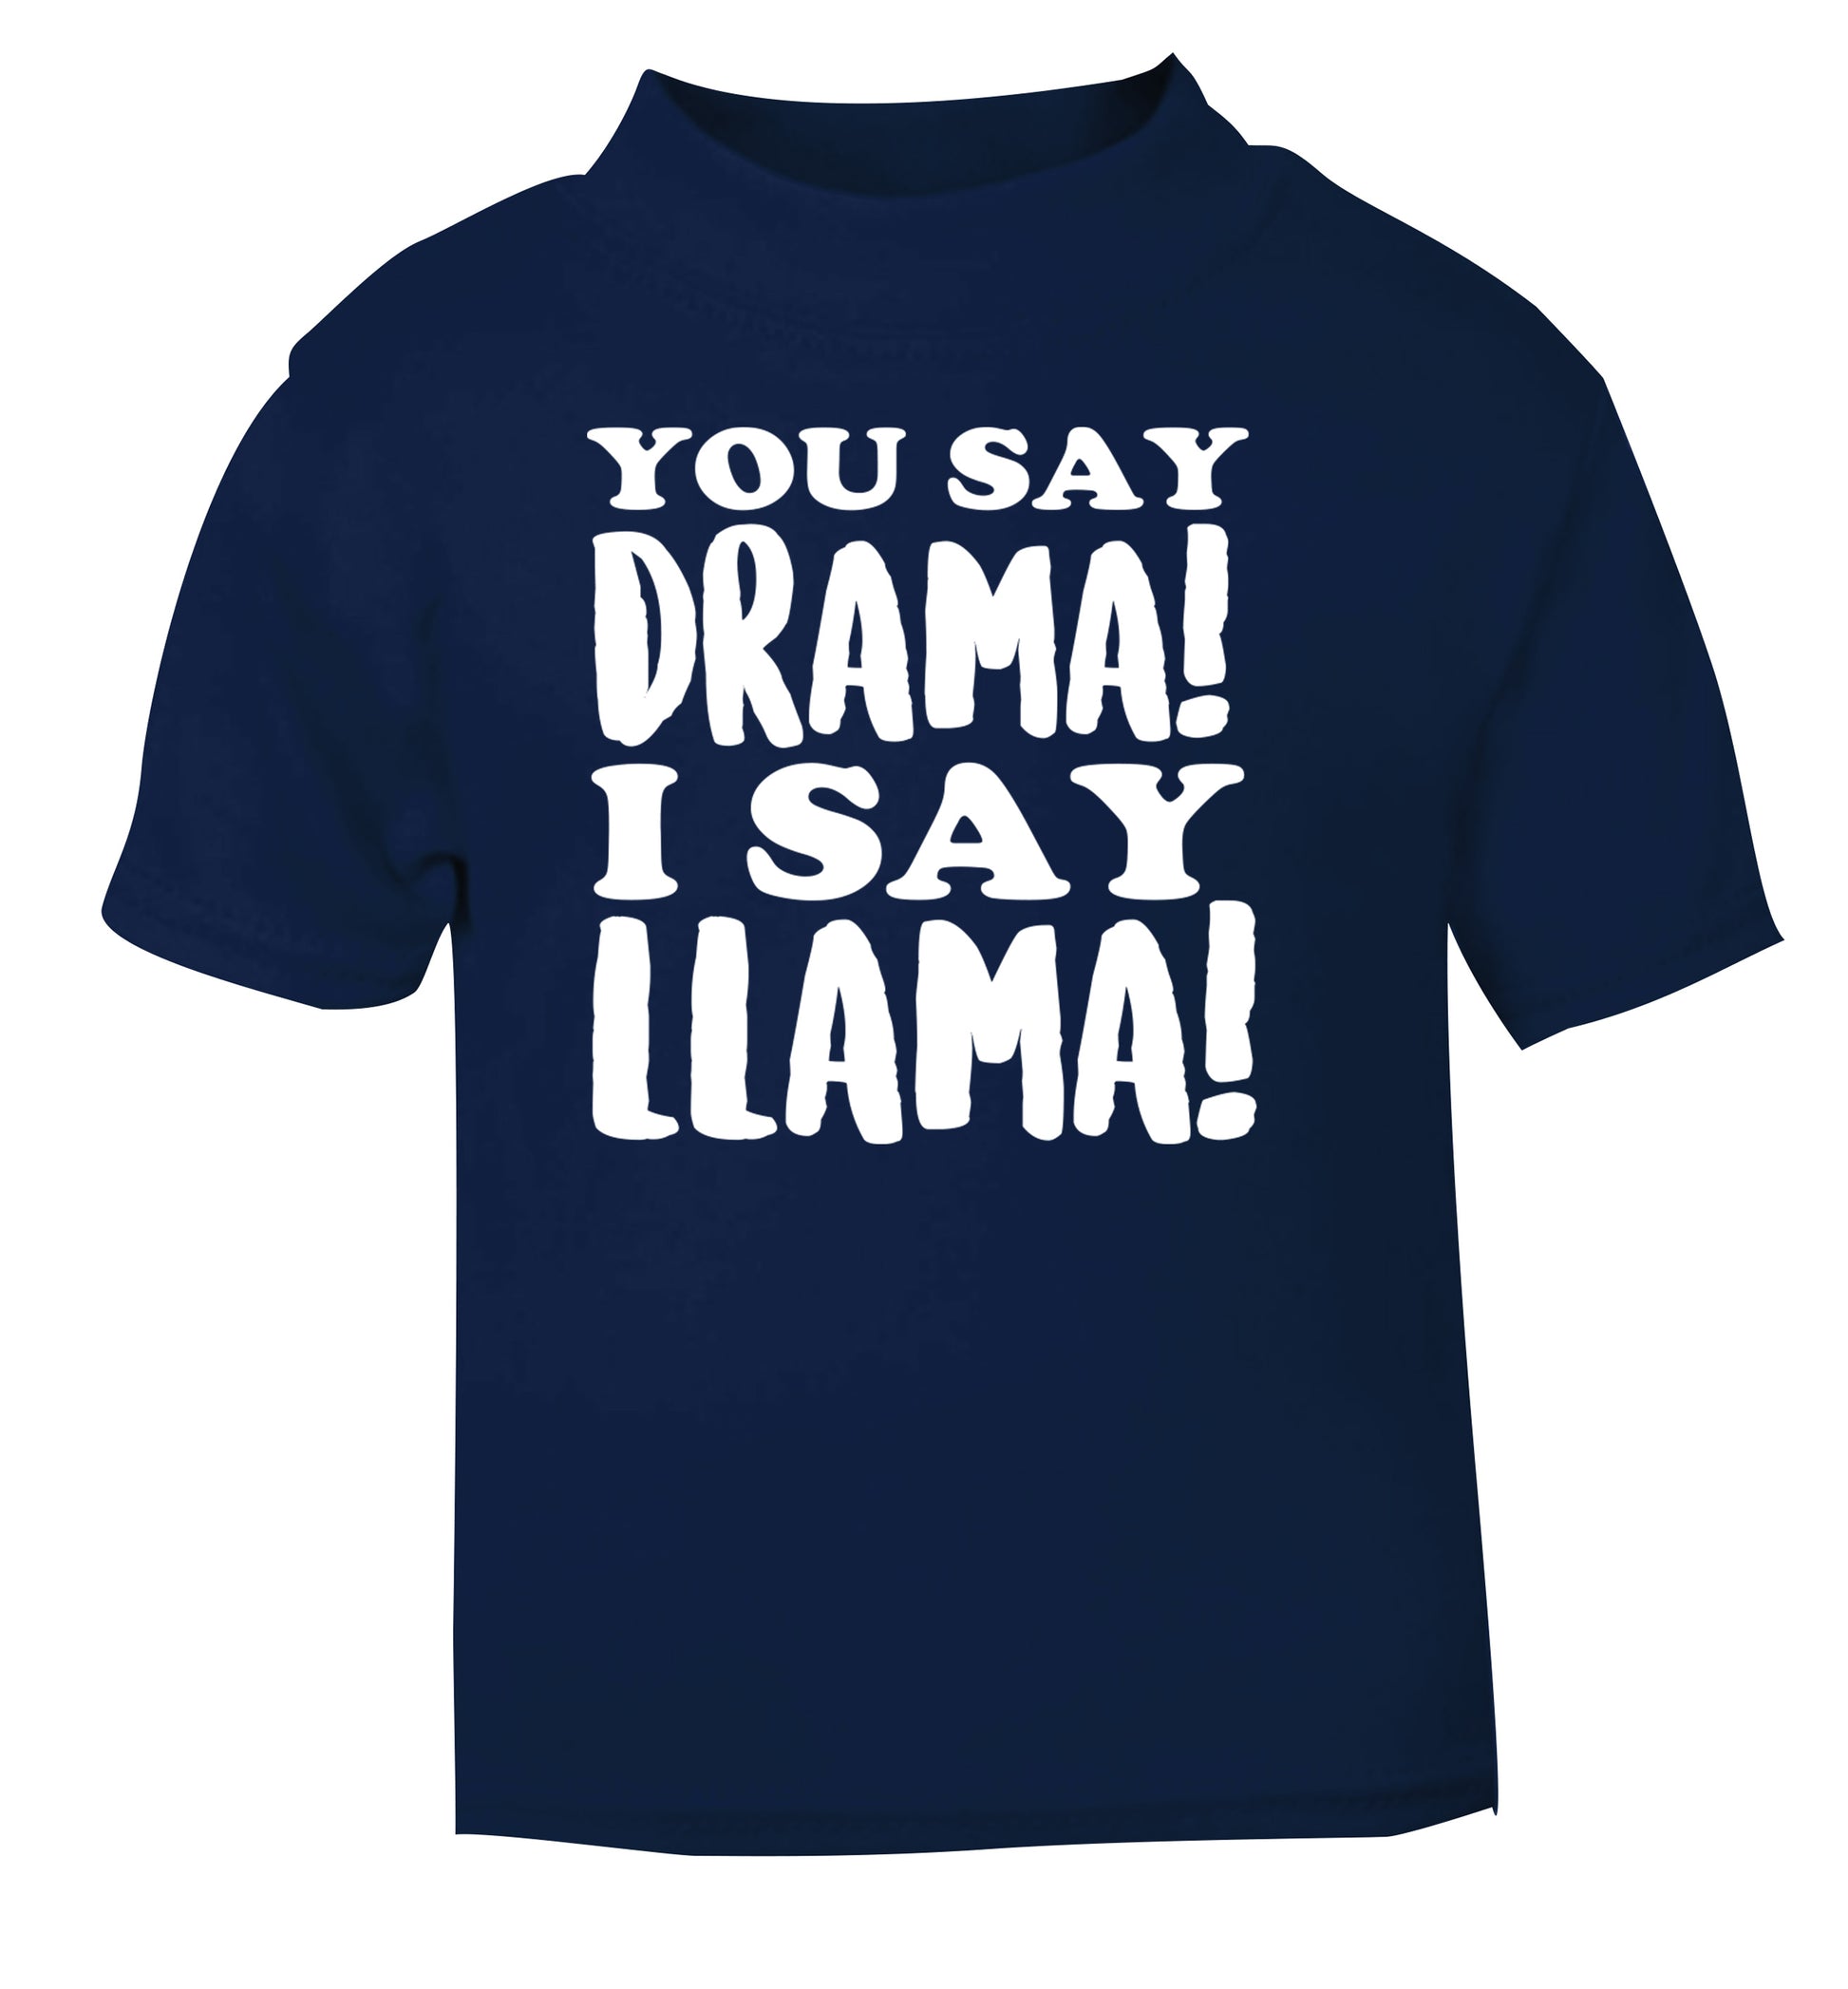 You say drama I say llama! navy Baby Toddler Tshirt 2 Years